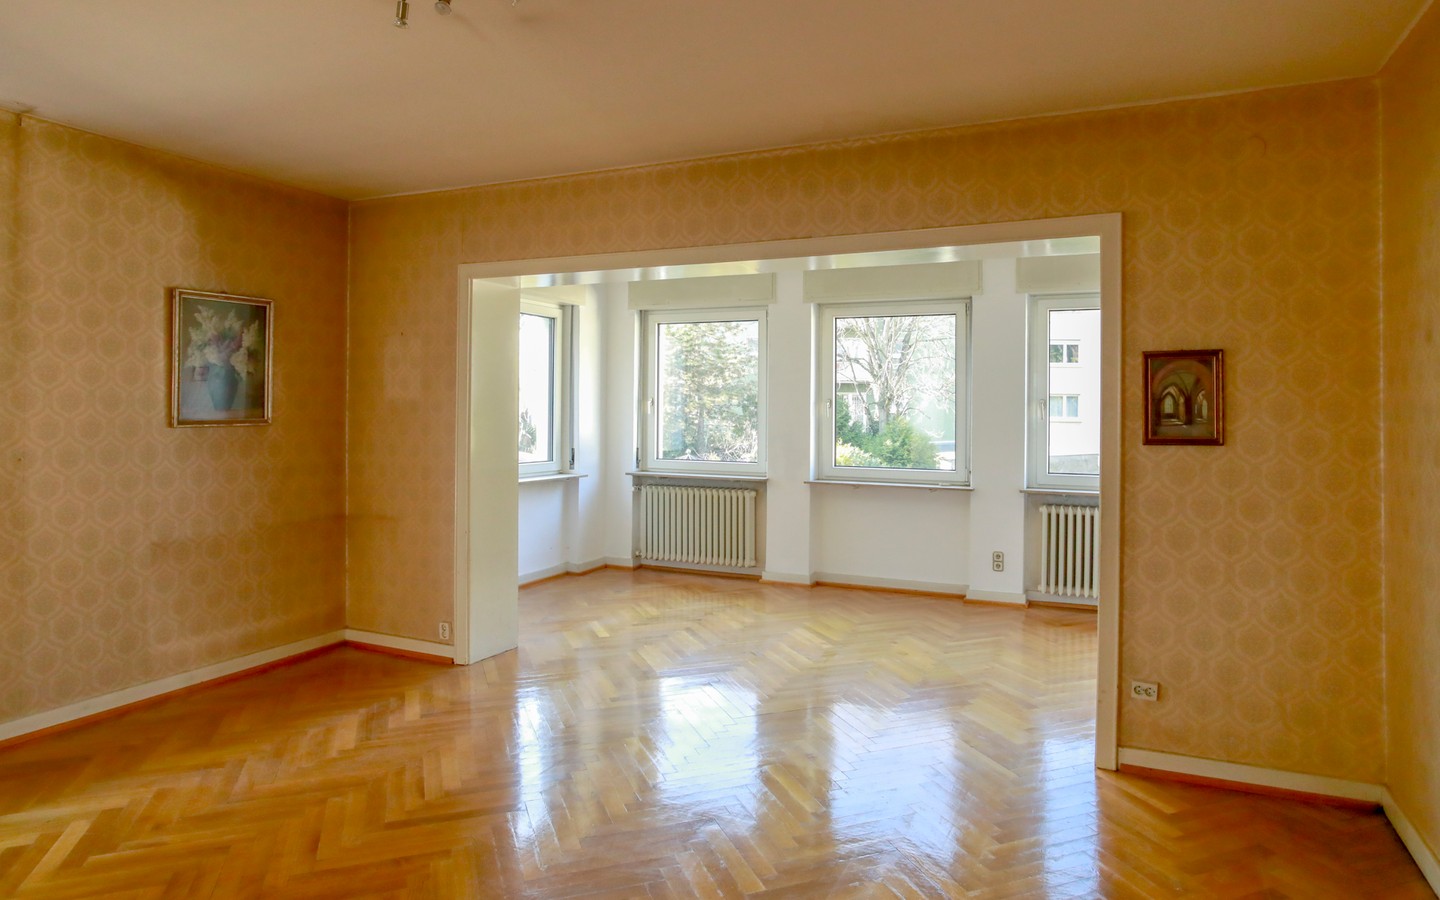 Wohnbereich  - Rarität: Freistehendes Einfamilienhaus auf ca. 700qm großem Grundstück in der Heidelberger Weststadt